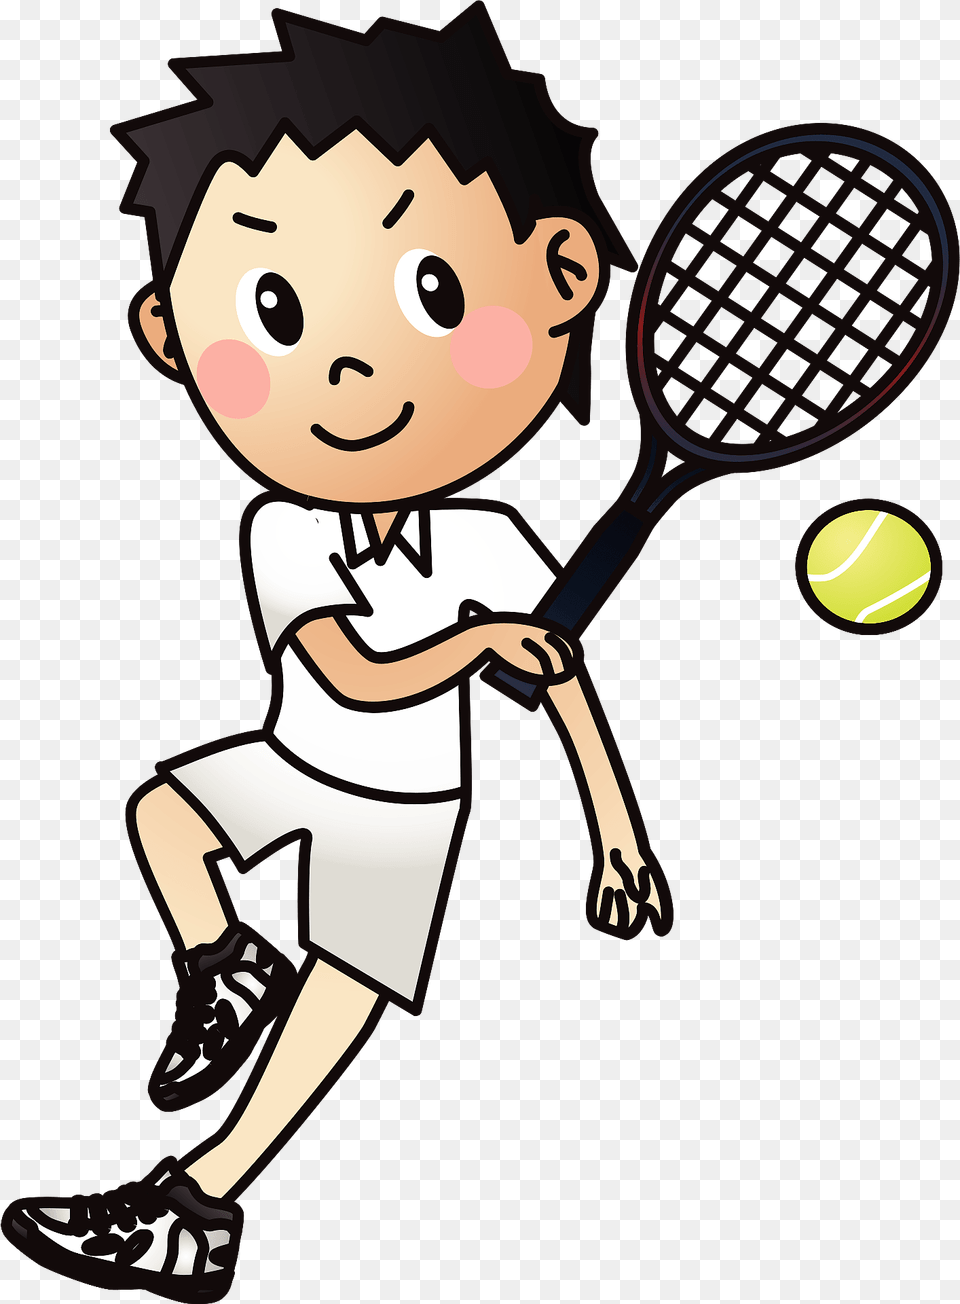 Tennis Player Clipart, Ball, Sport, Tennis Ball, Baby Png